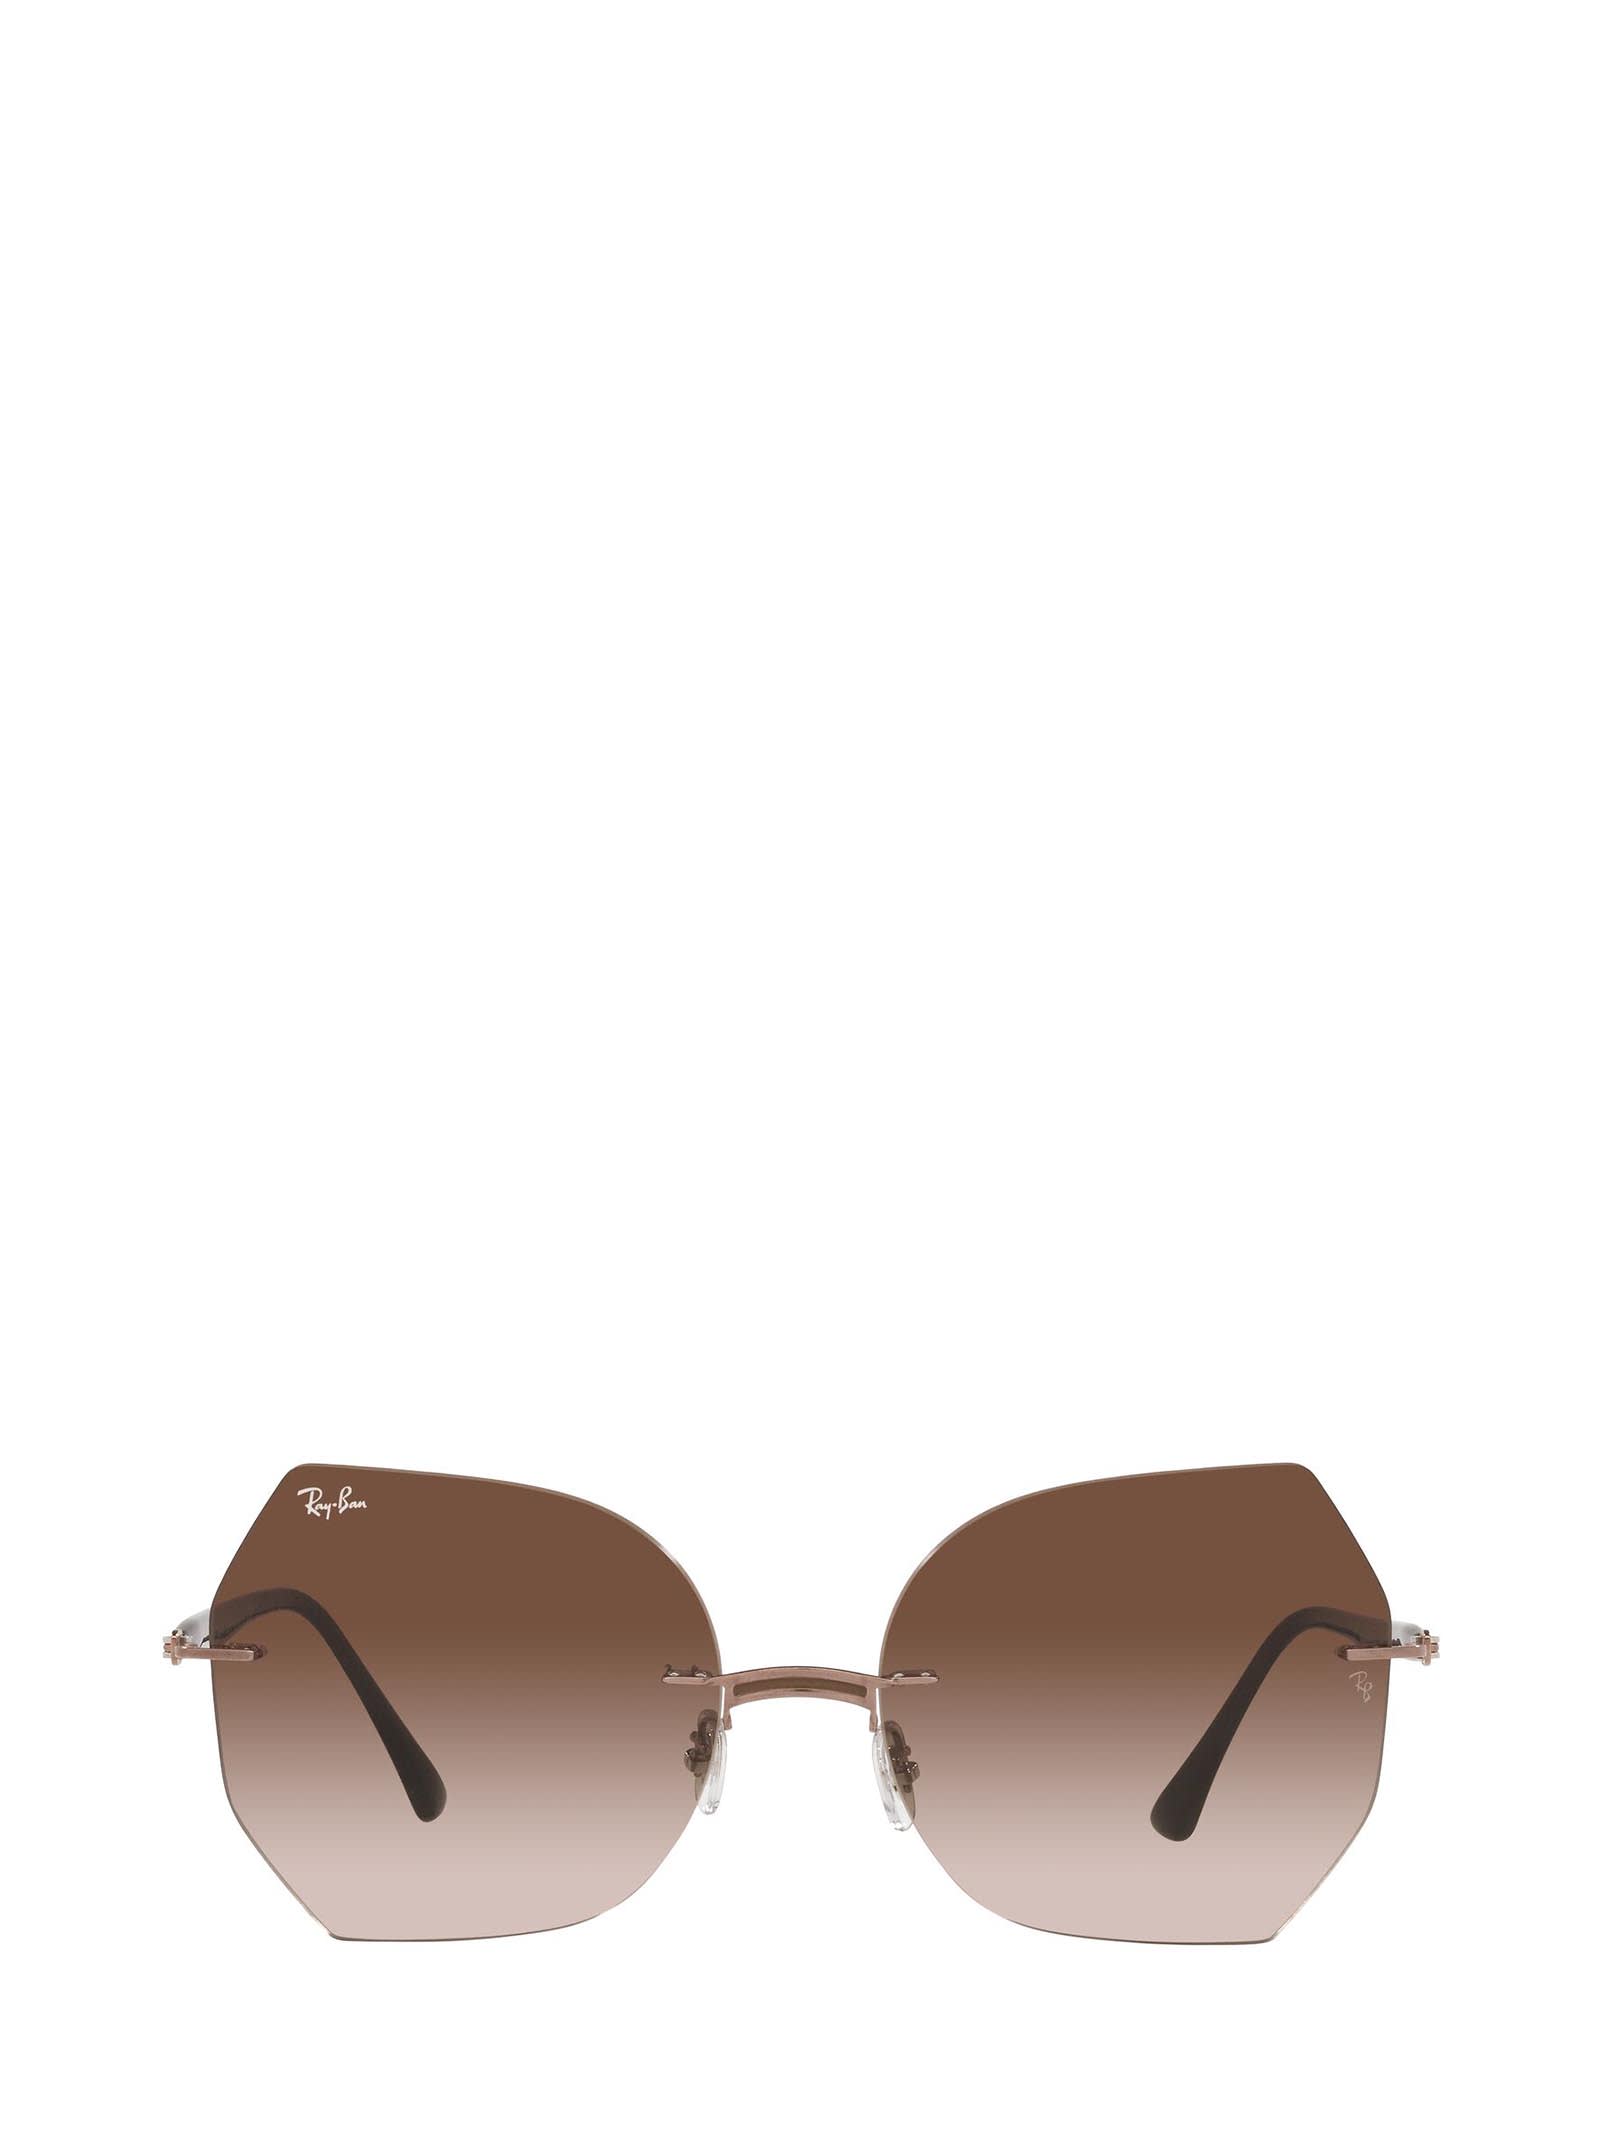 Ray-Ban Ray-ban Rb8065 Brown On Light Brown Sunglasses